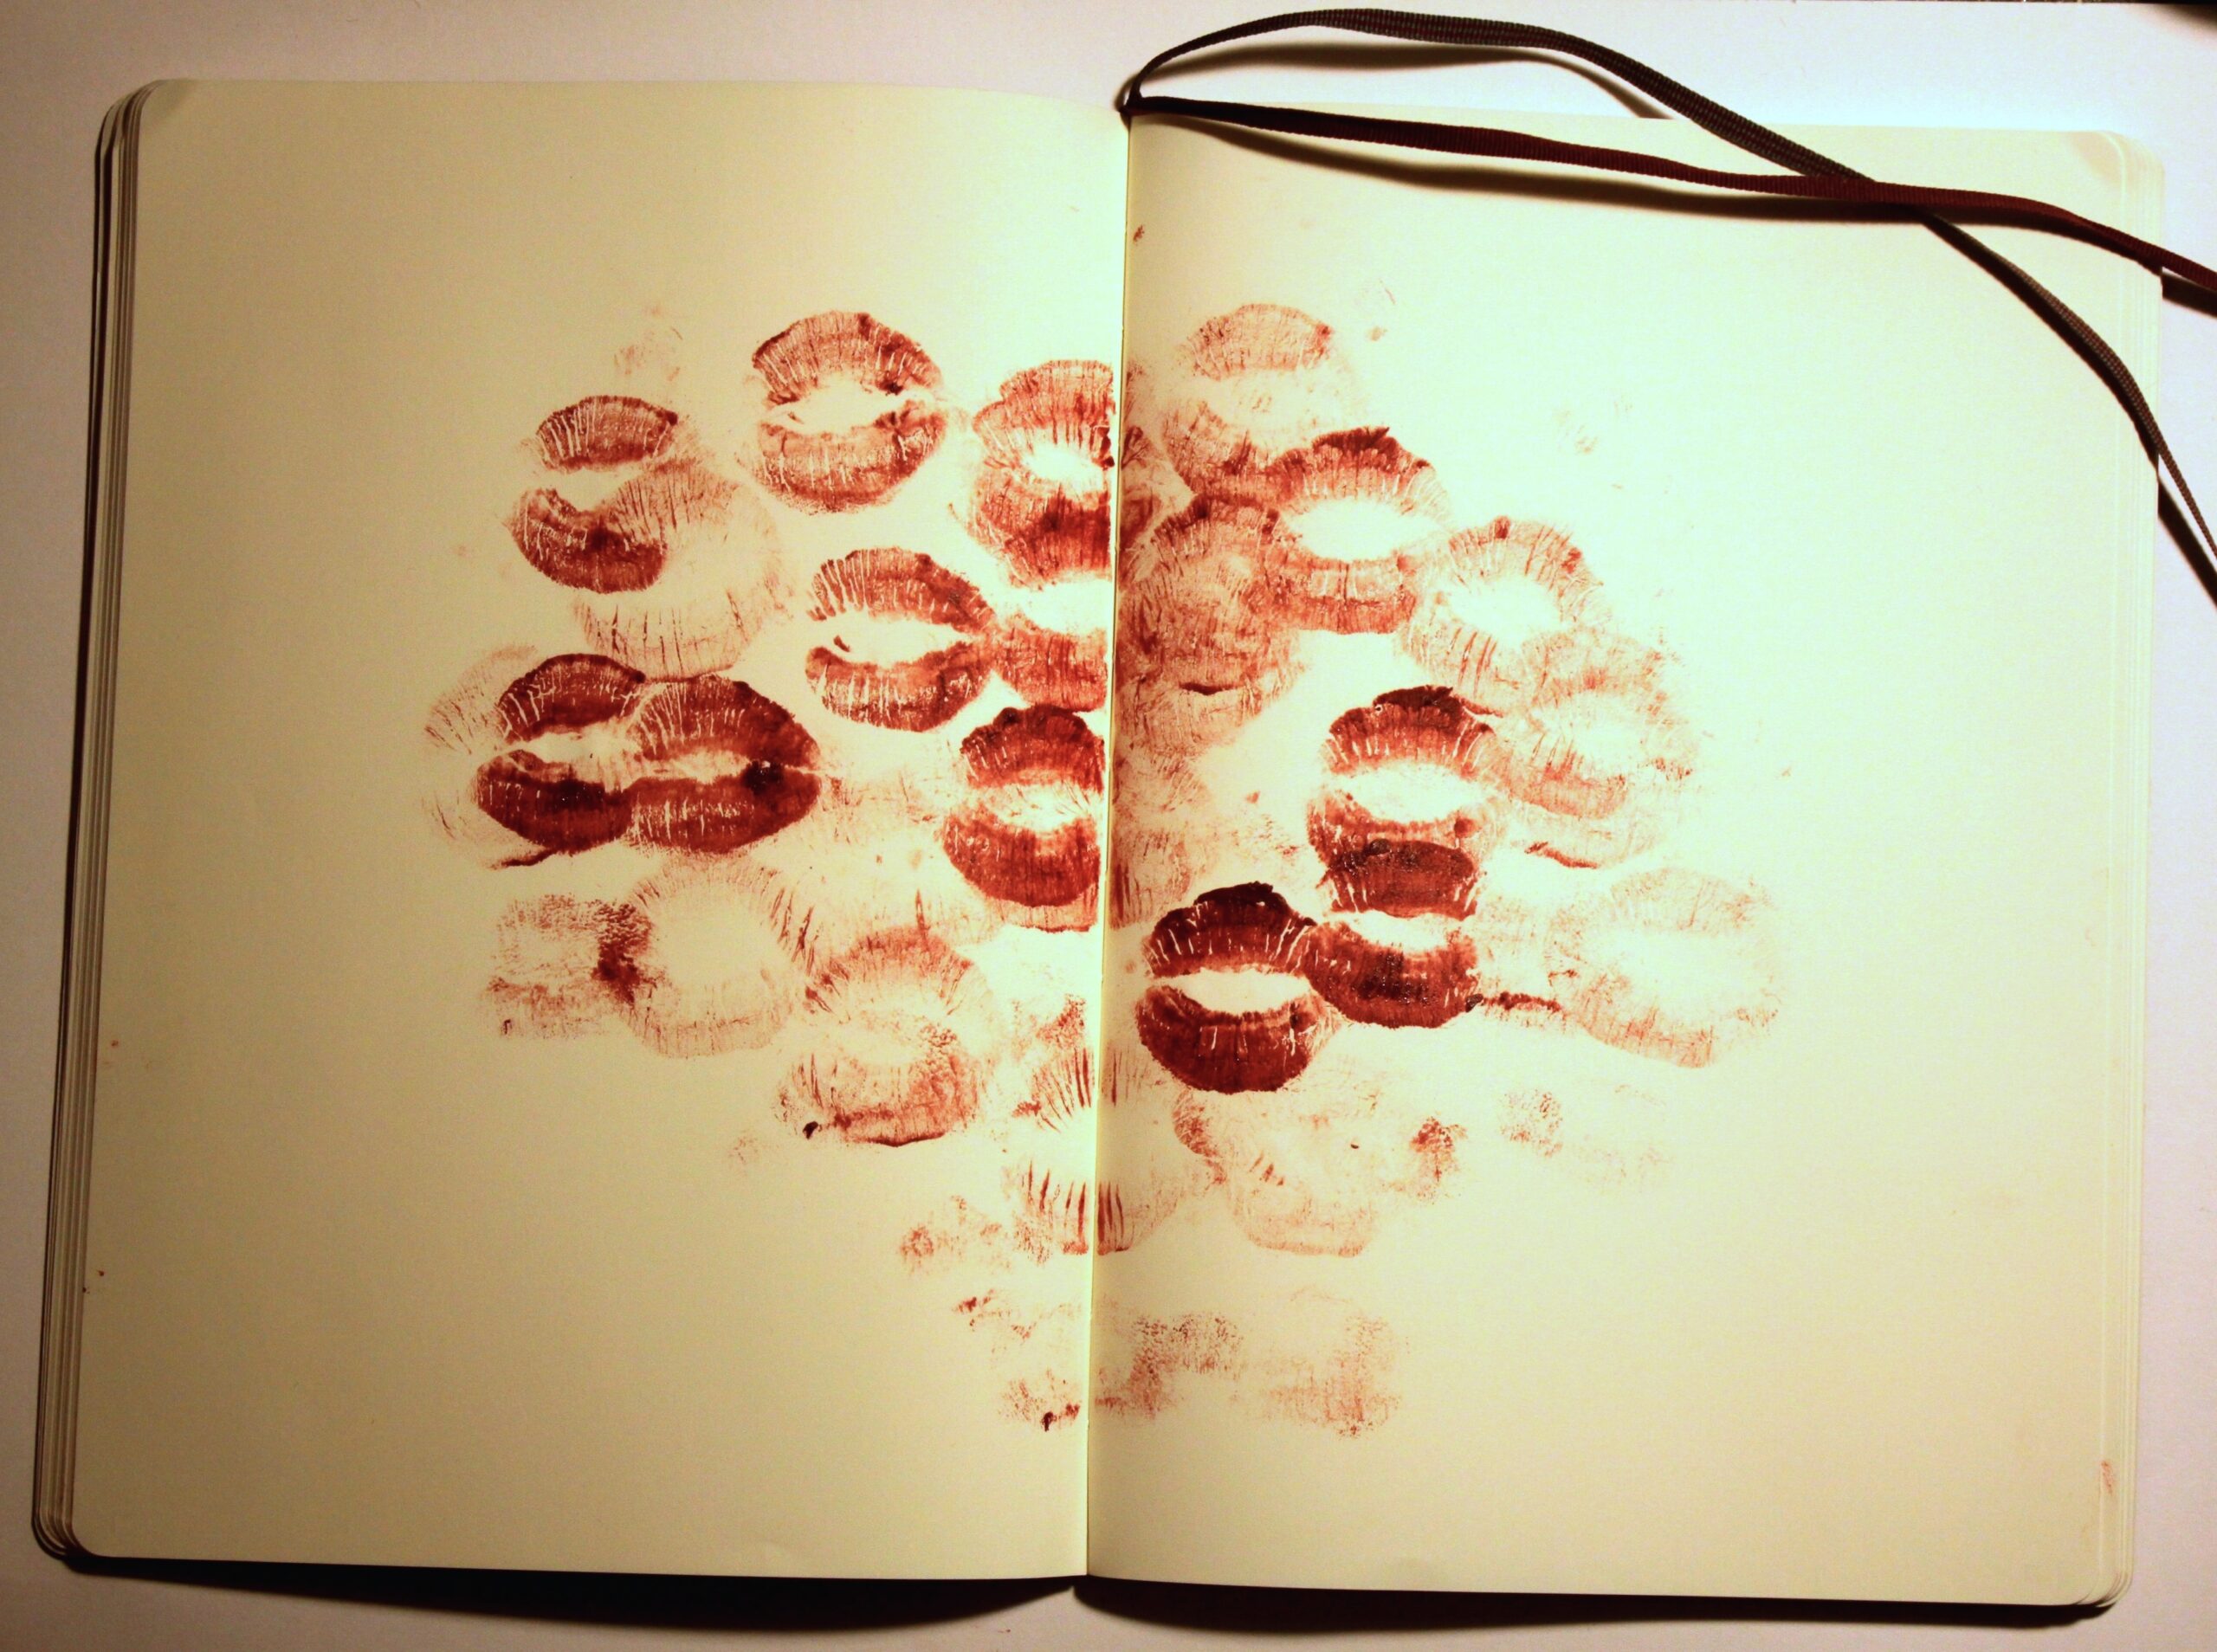 Billeder af rødekysmunde fra løbestift i en bog